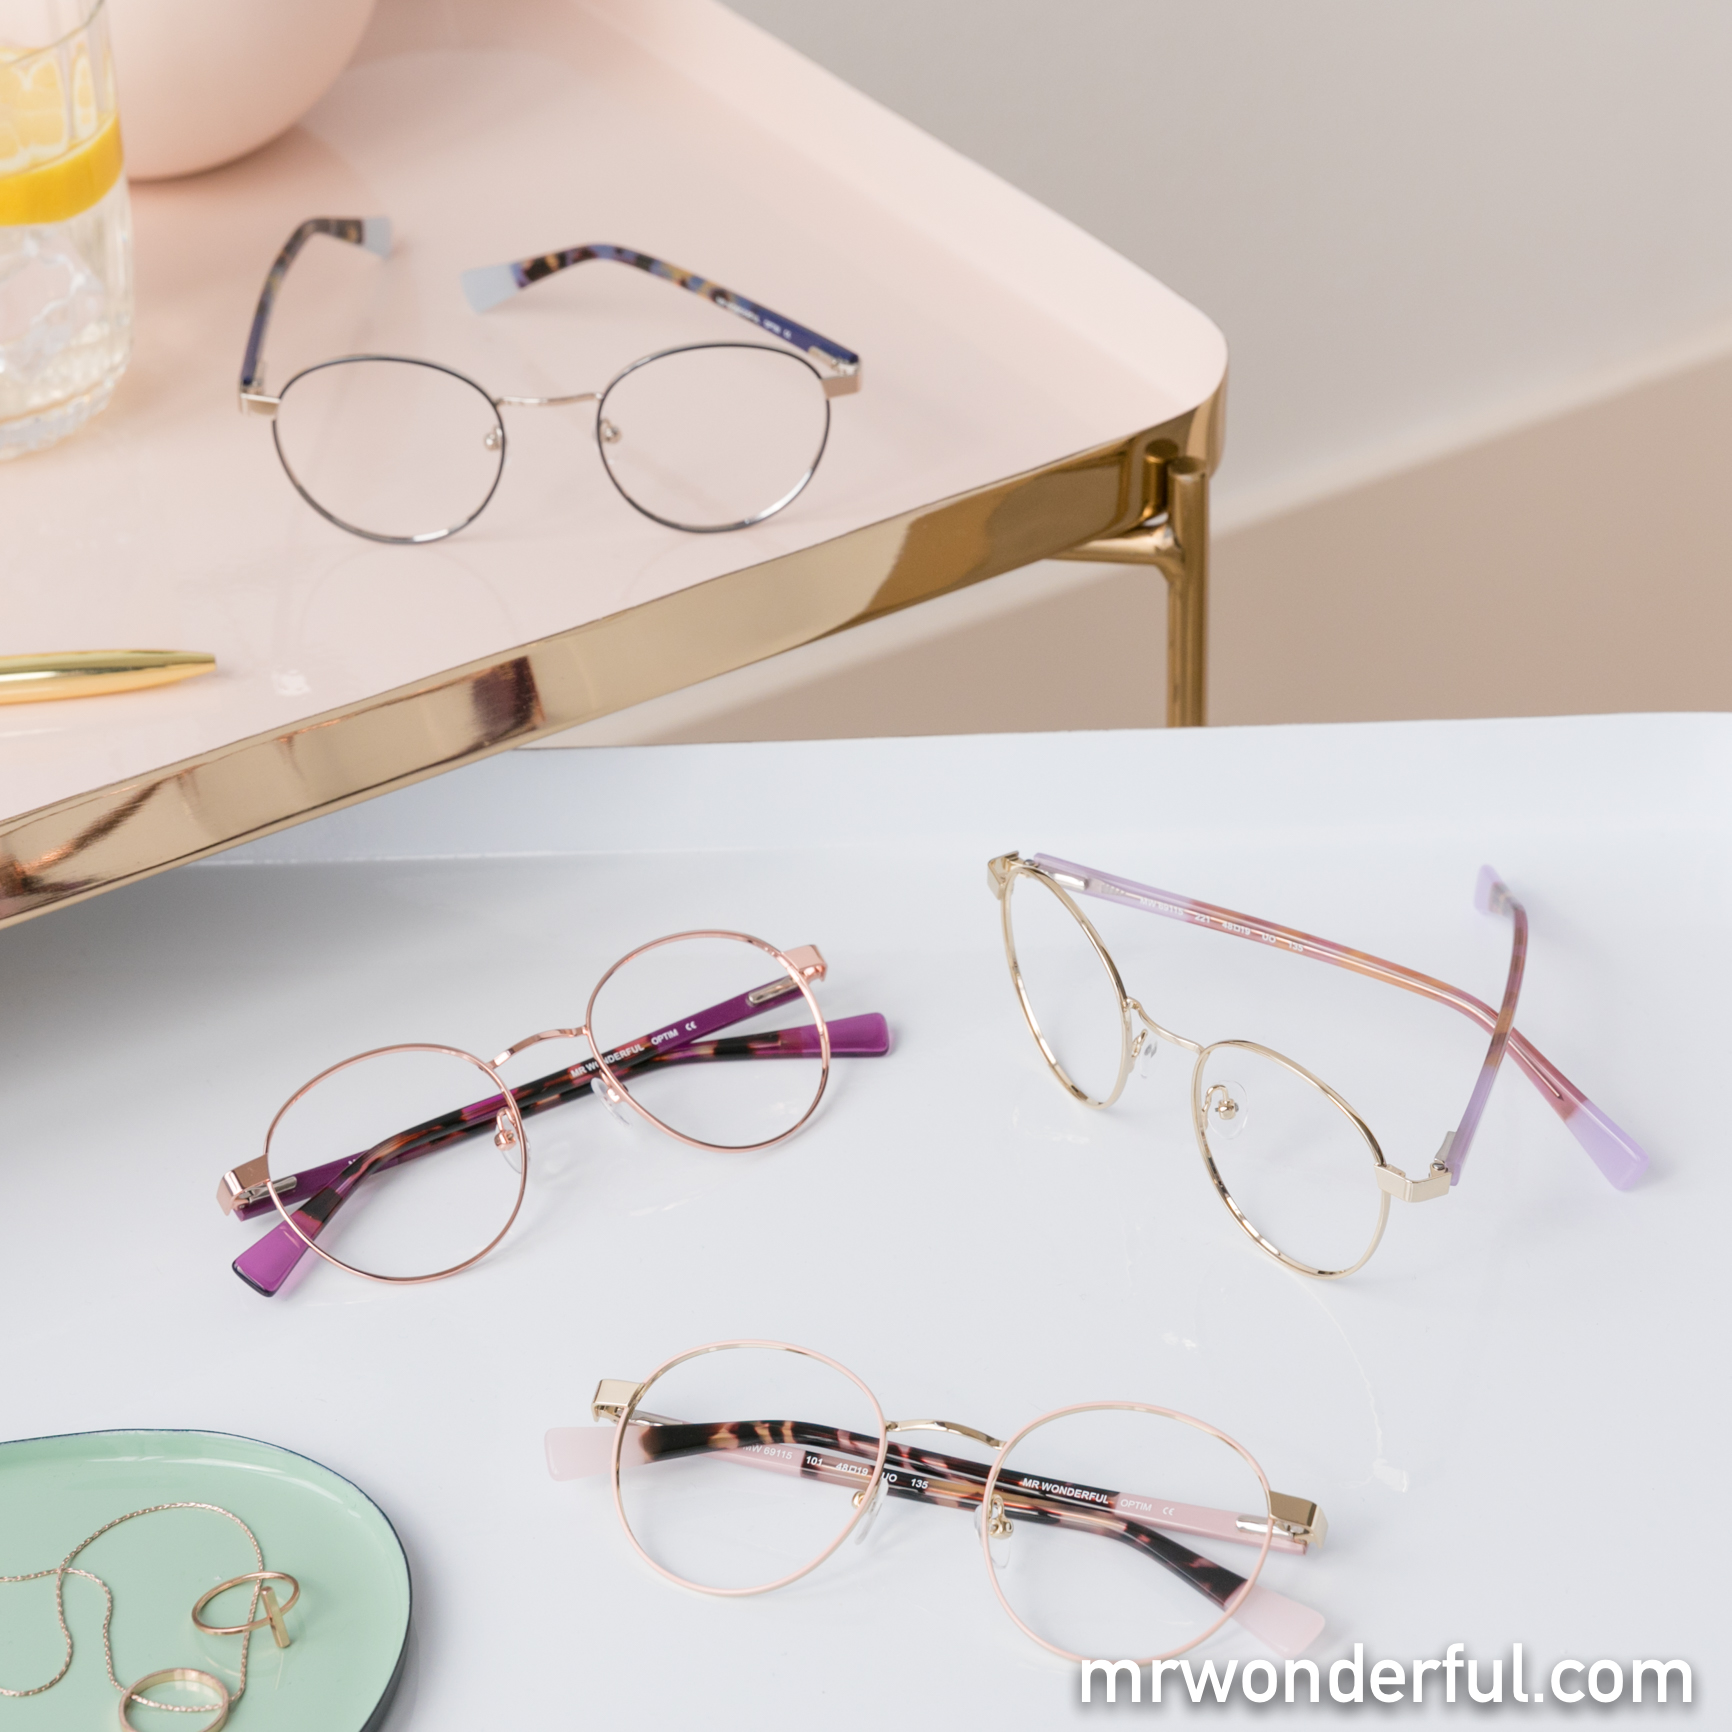 Lo vemos muy clarito, ¡estas gafas originales Mr. Wonderful van a gustar infinito! muymolon